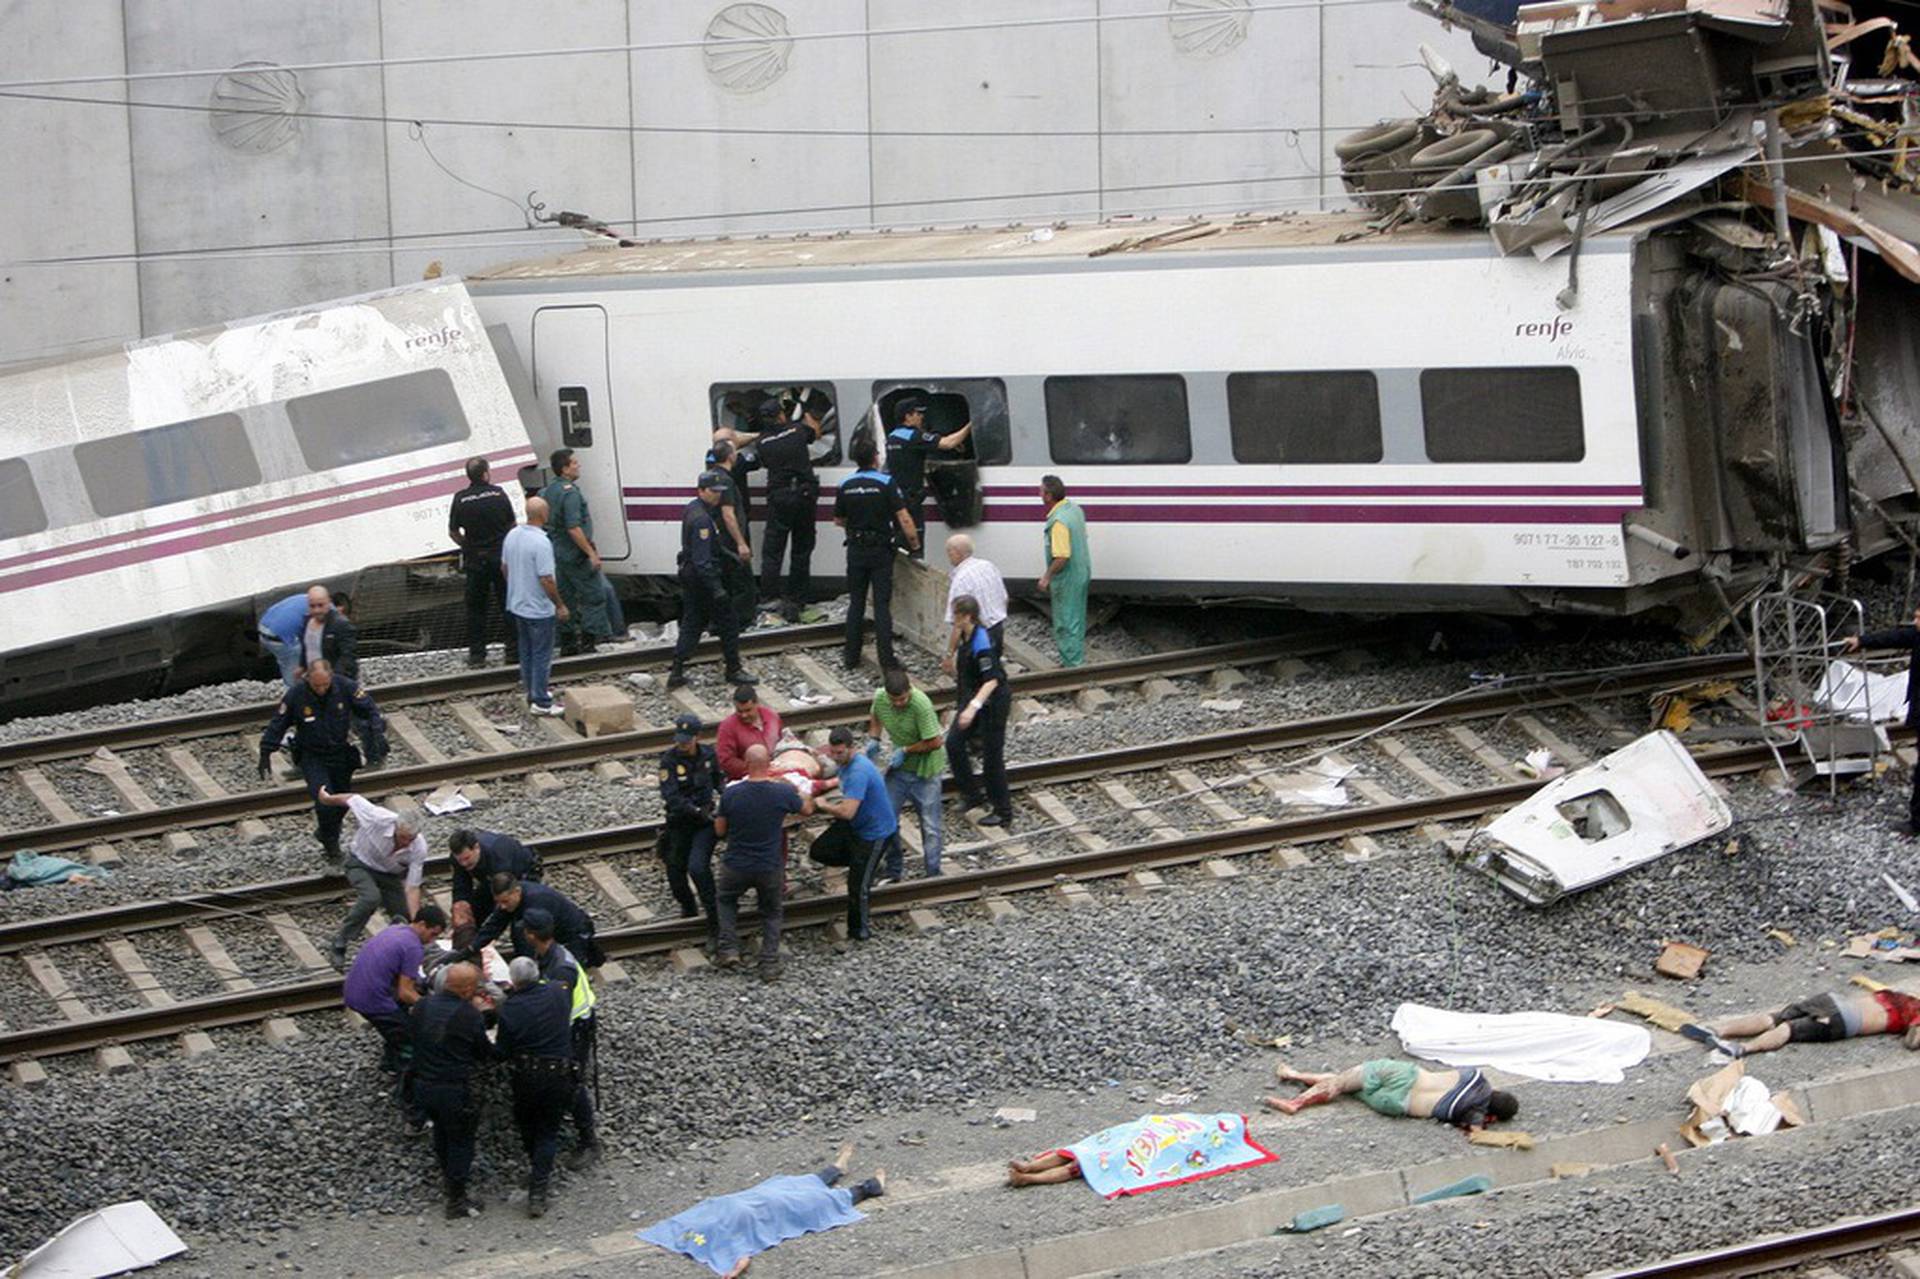 Почему задержка поездов. Крушение поезда в Испании 2013. Крушение поезда Сантьяго де Компостела. Крушение поезда 24 июля 2013 года в Испании.